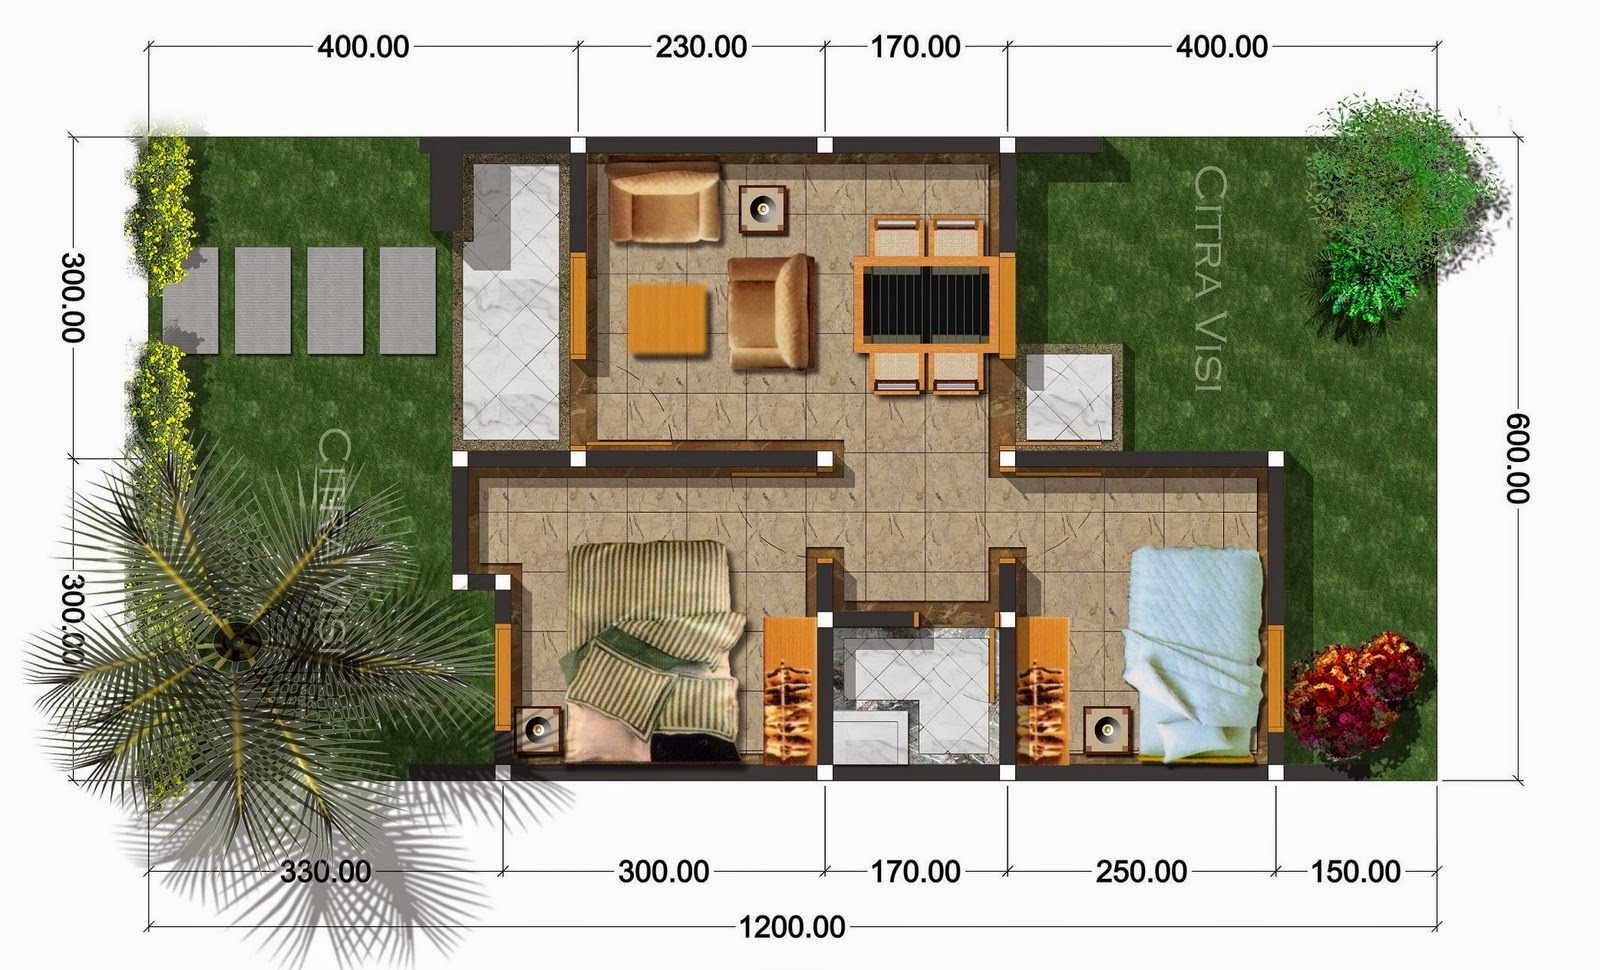 Desain Rumah Minimalis 2 Lantai Type 36 90 Foto Desain Rumah